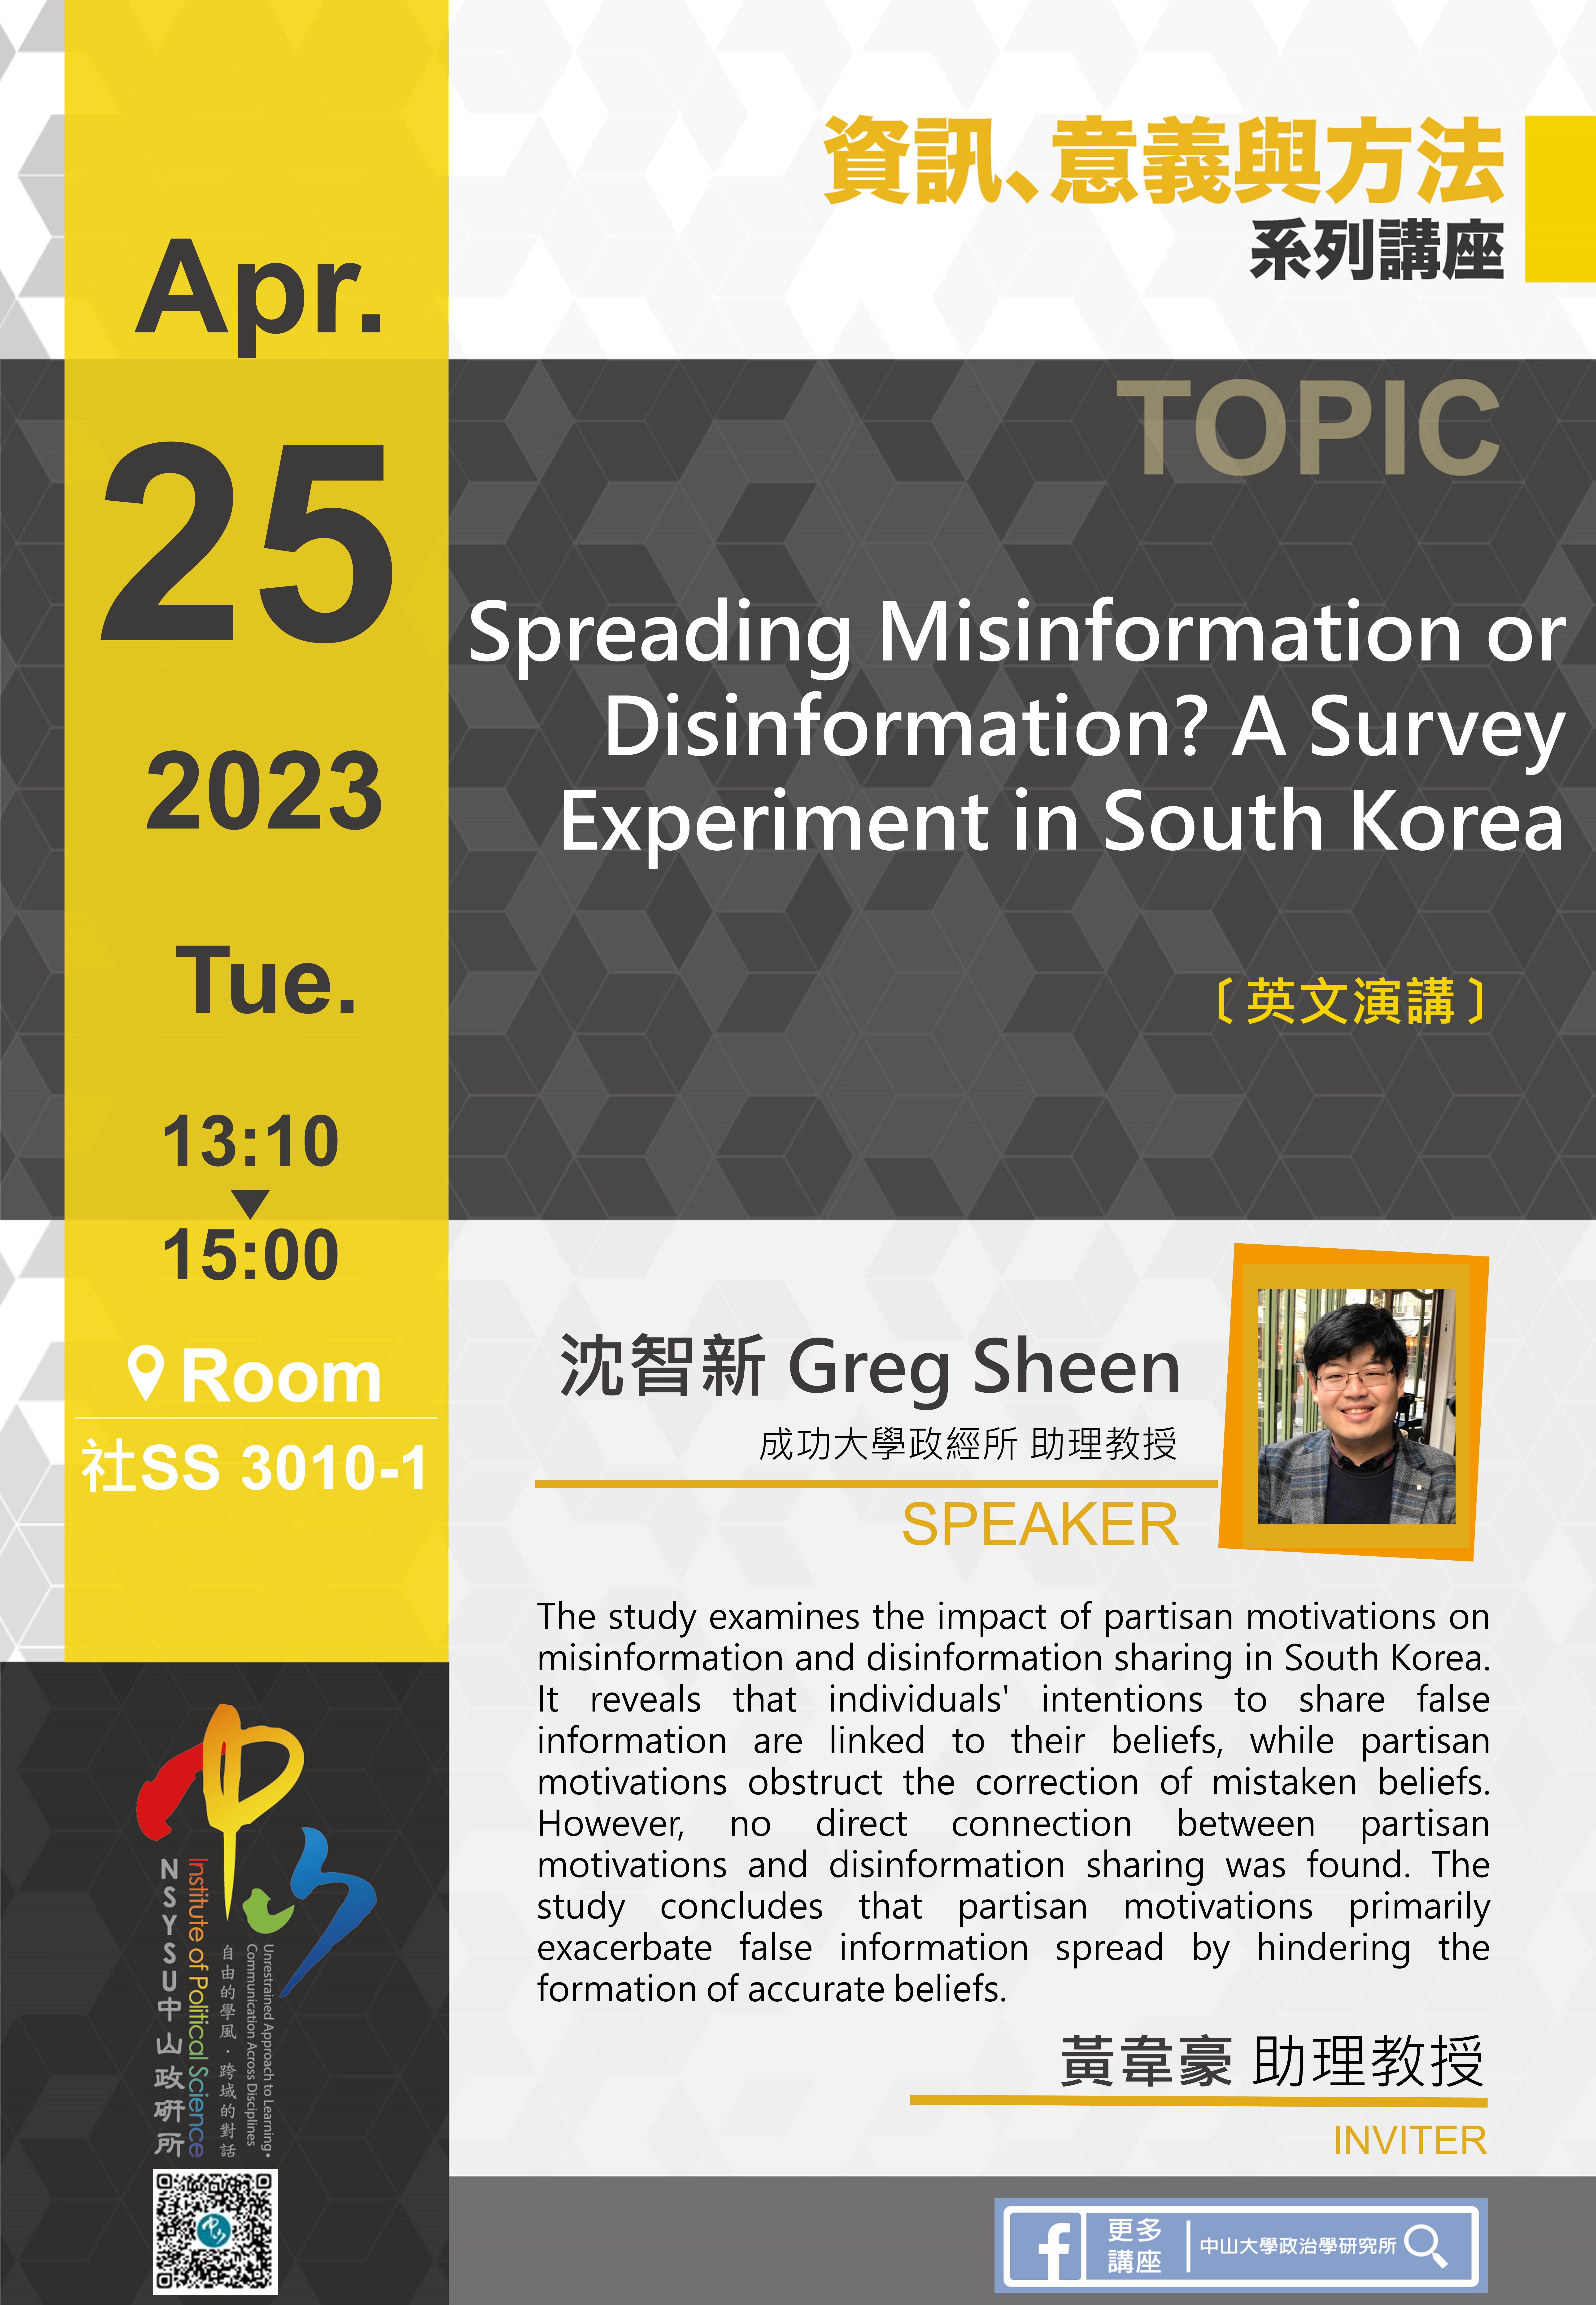 沈智新 Greg Sheen：Spreading Misinformation or Disinformation? A Survey Experiment in South Korea